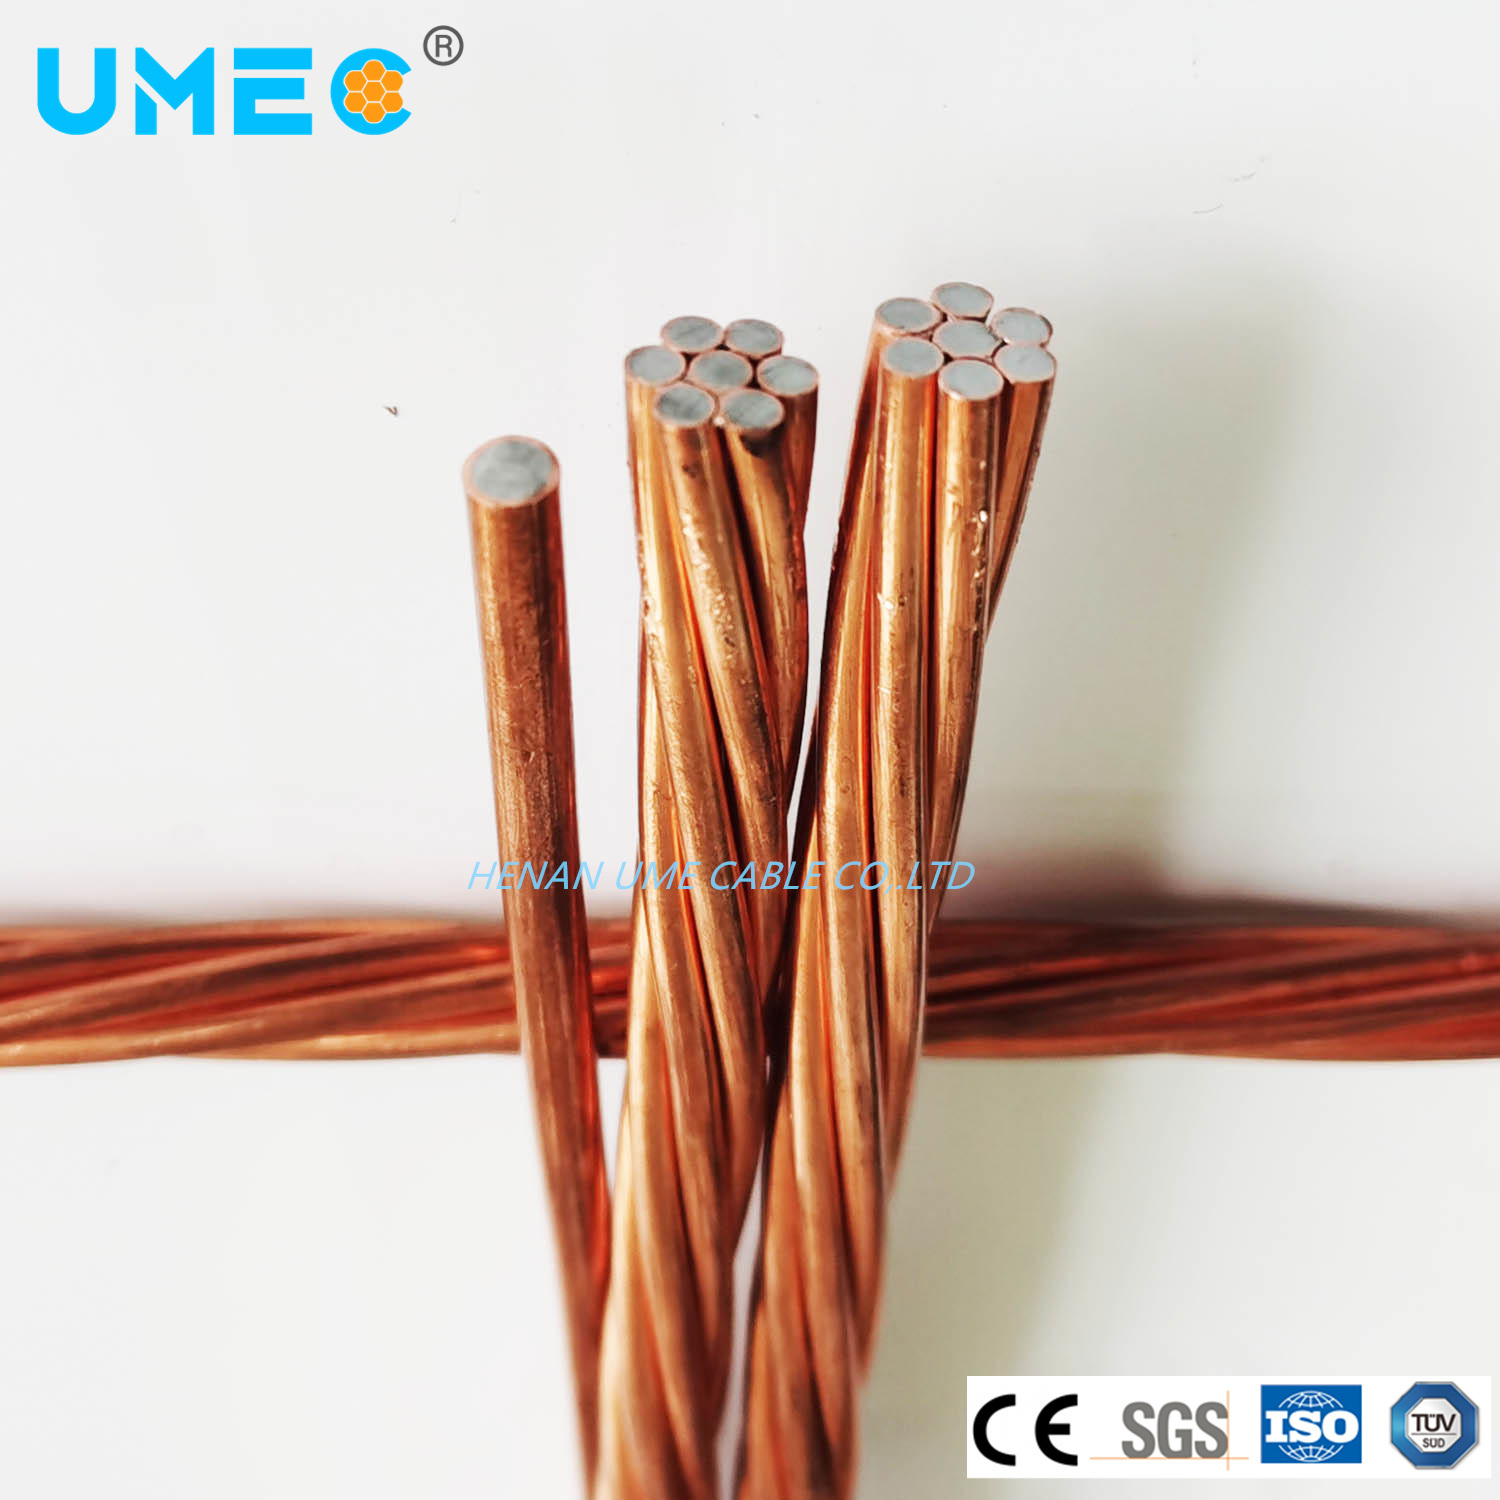 Copper Clad Steel Wire Bare Copper Conductor 30% 40% Conductivity CCS